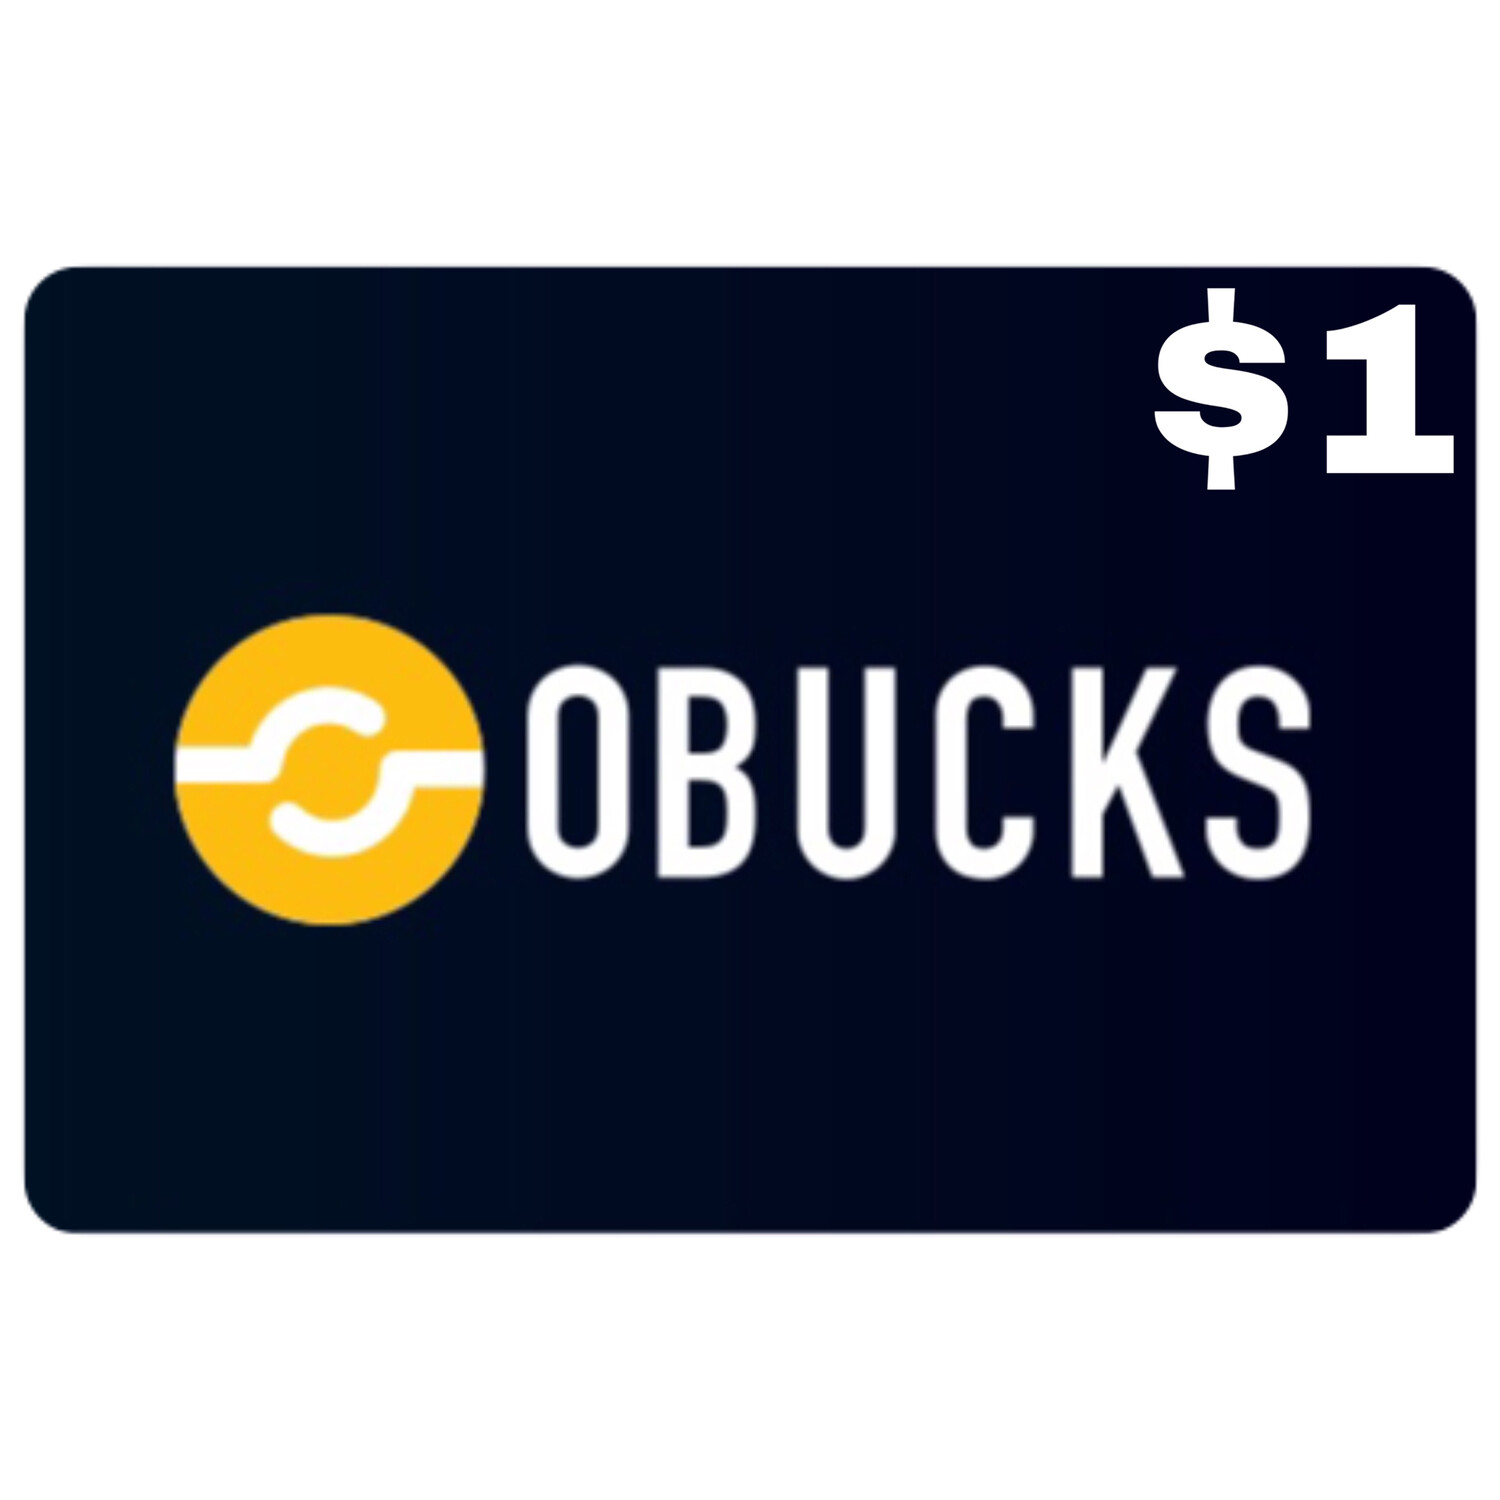 Openbucks Gift Card $1 (Obucks)